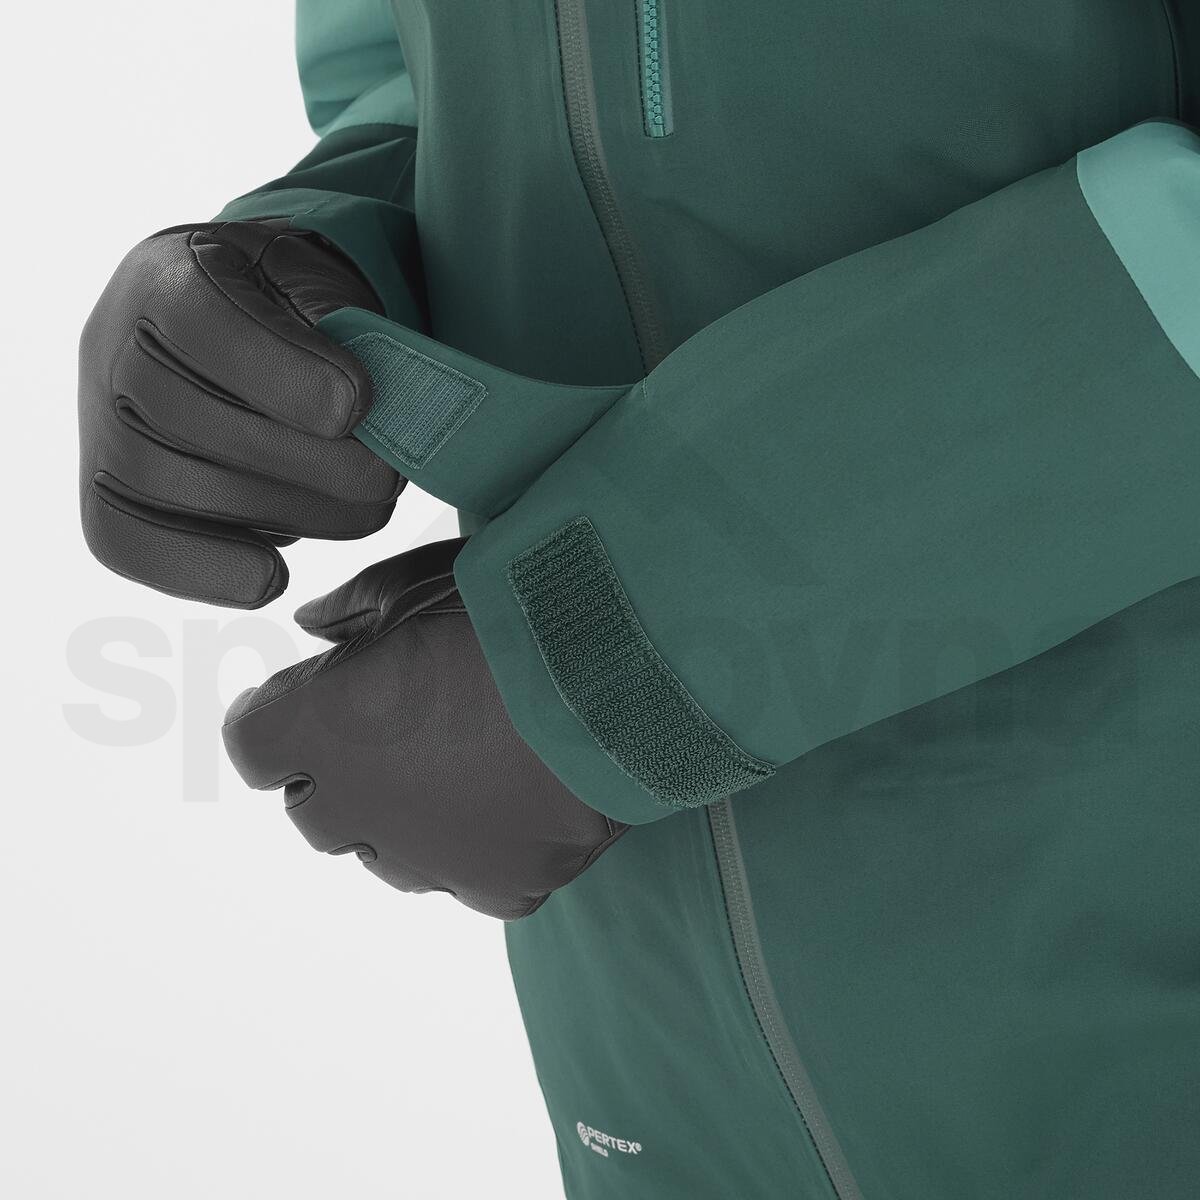 Bunda Salomon Stance 3L Jacket W - zelená